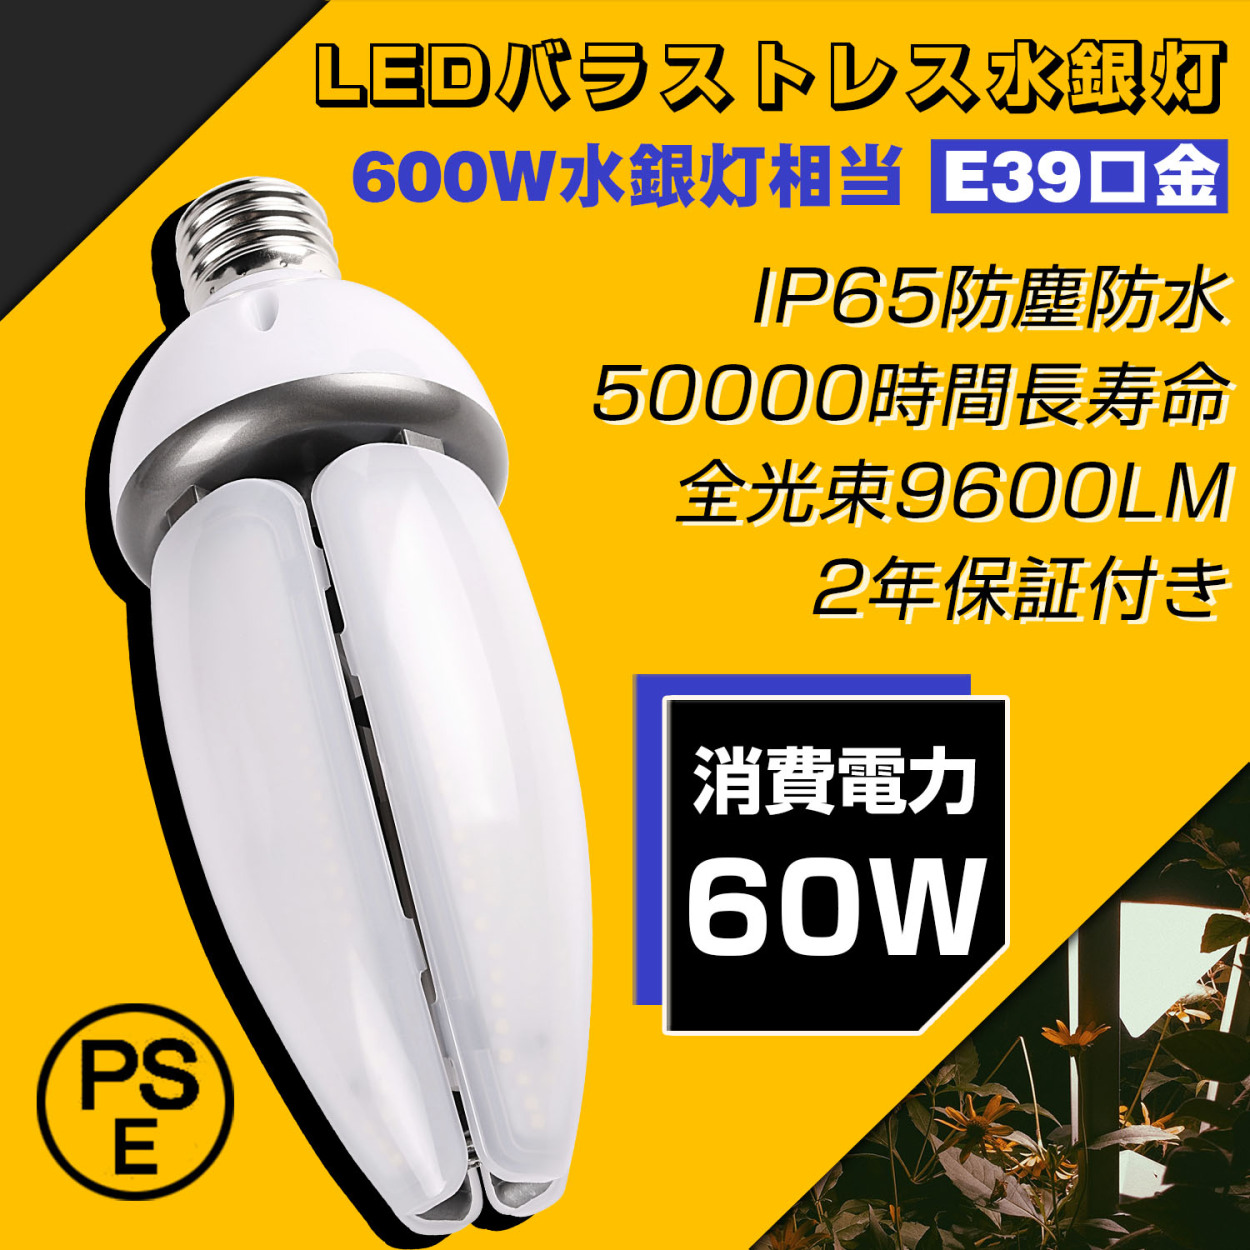 LEDコーンライト 80w 12800lm高輝度 e39口金 IP65防水防塵 屋外屋内